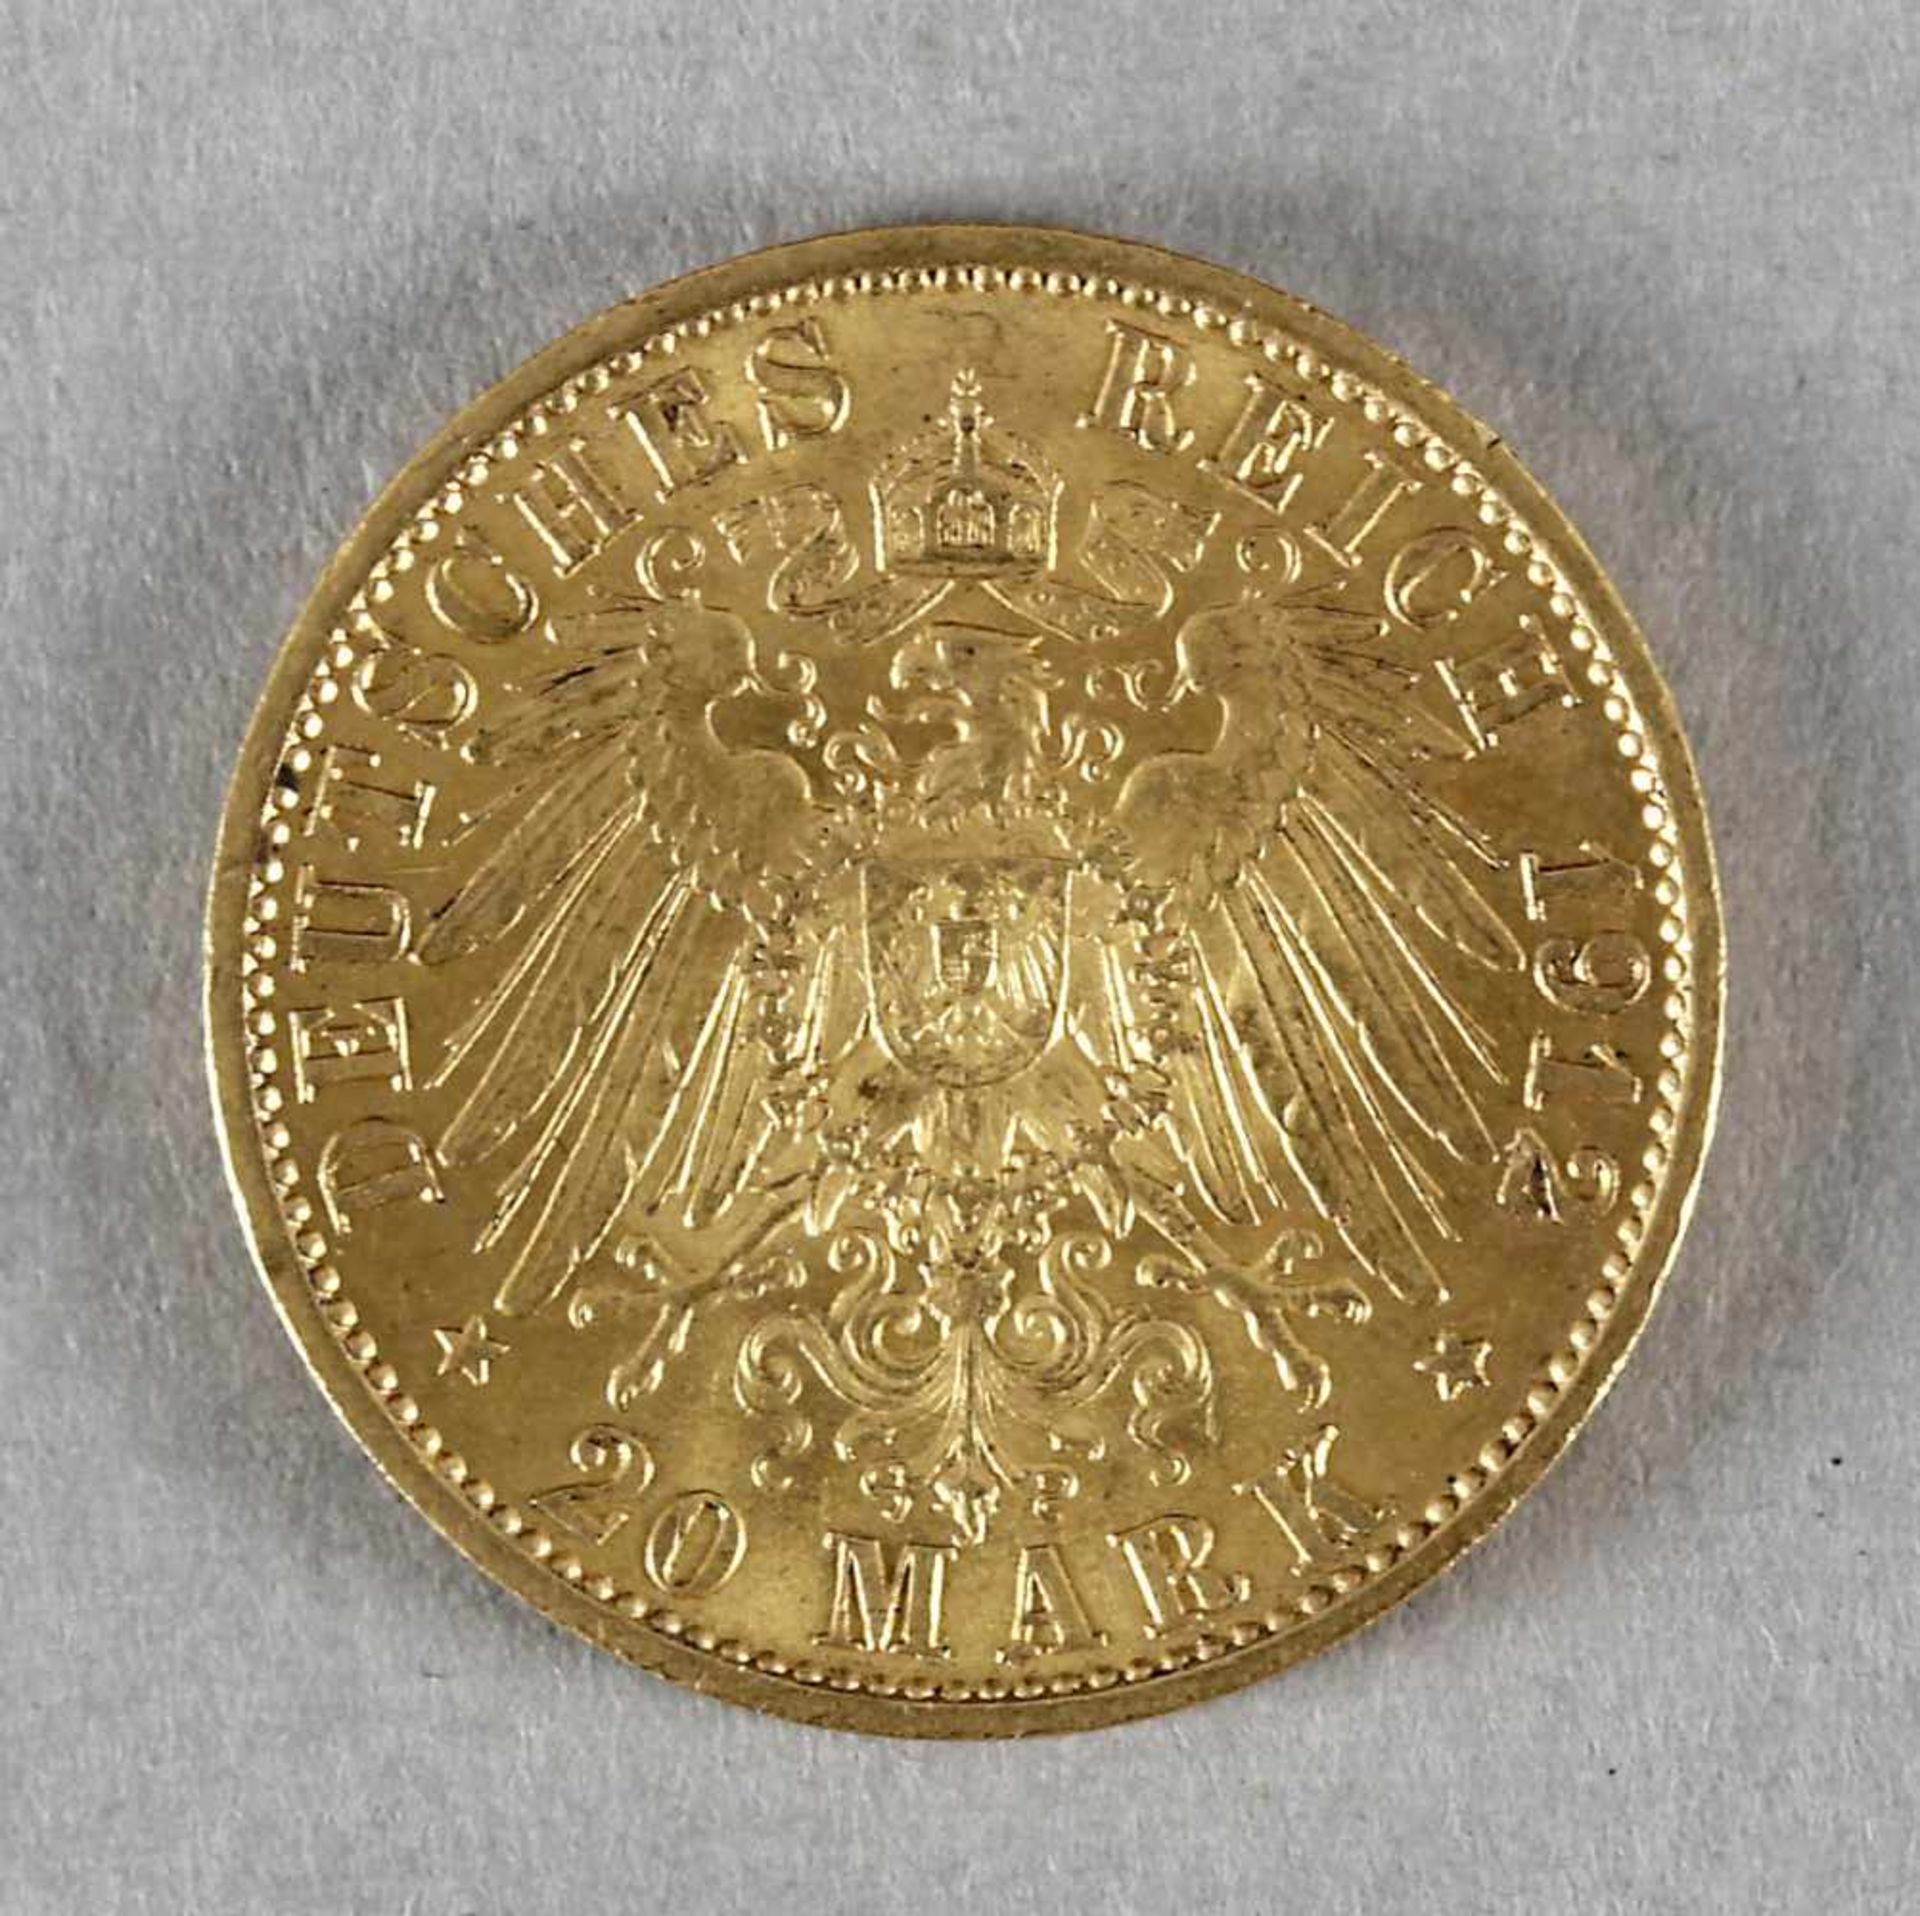 Goldmünze, 20 Mark, Wilhelm II. von Preußen, 1912 A - Image 2 of 2